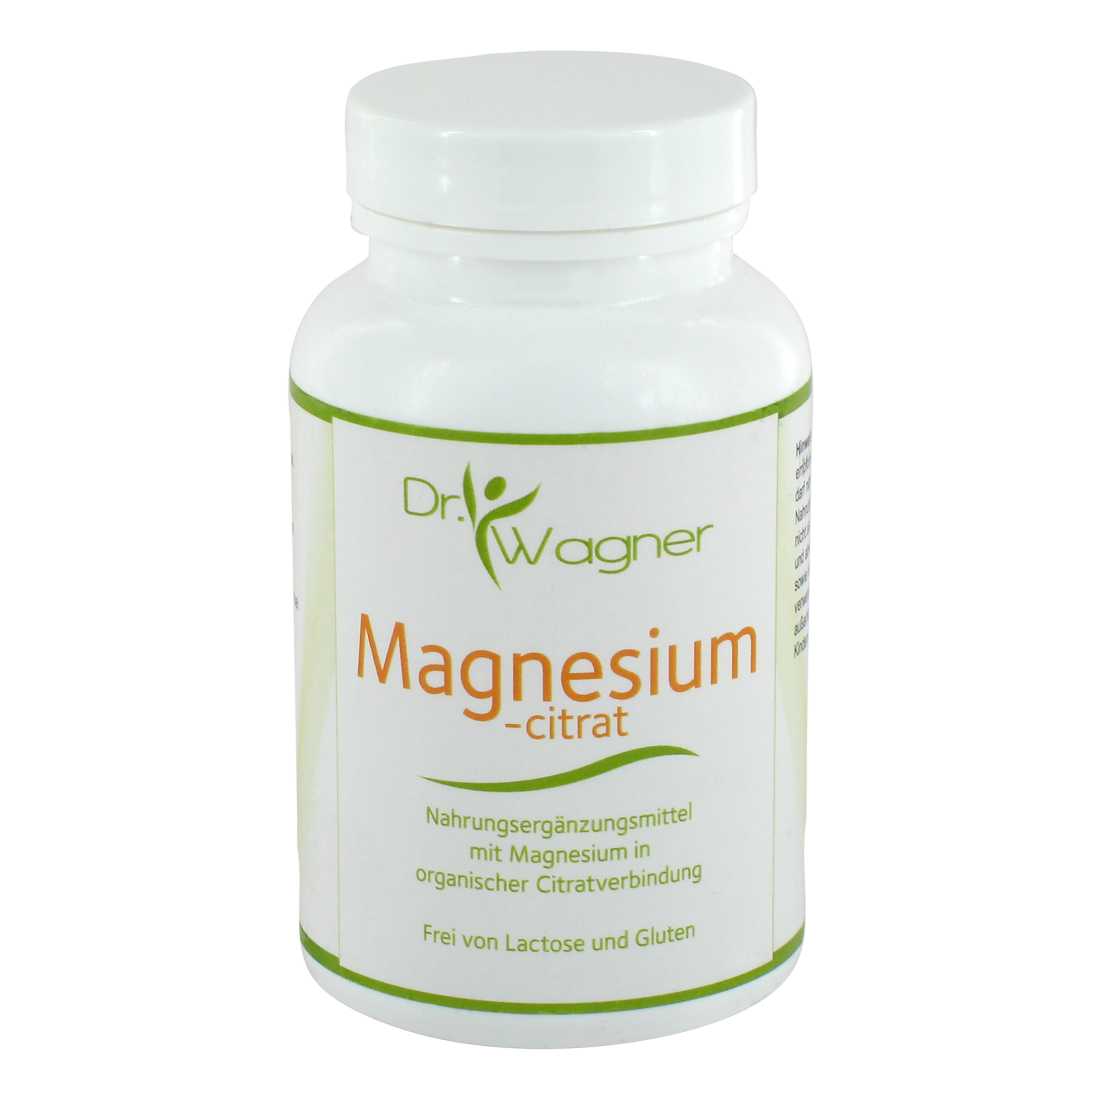 Sie leiden an Magnesiummangel, Zinkmangel oder Selenmangel? Dr. Wagner Vital bietet dafür die passenden Nahrungsergänzungsmittel